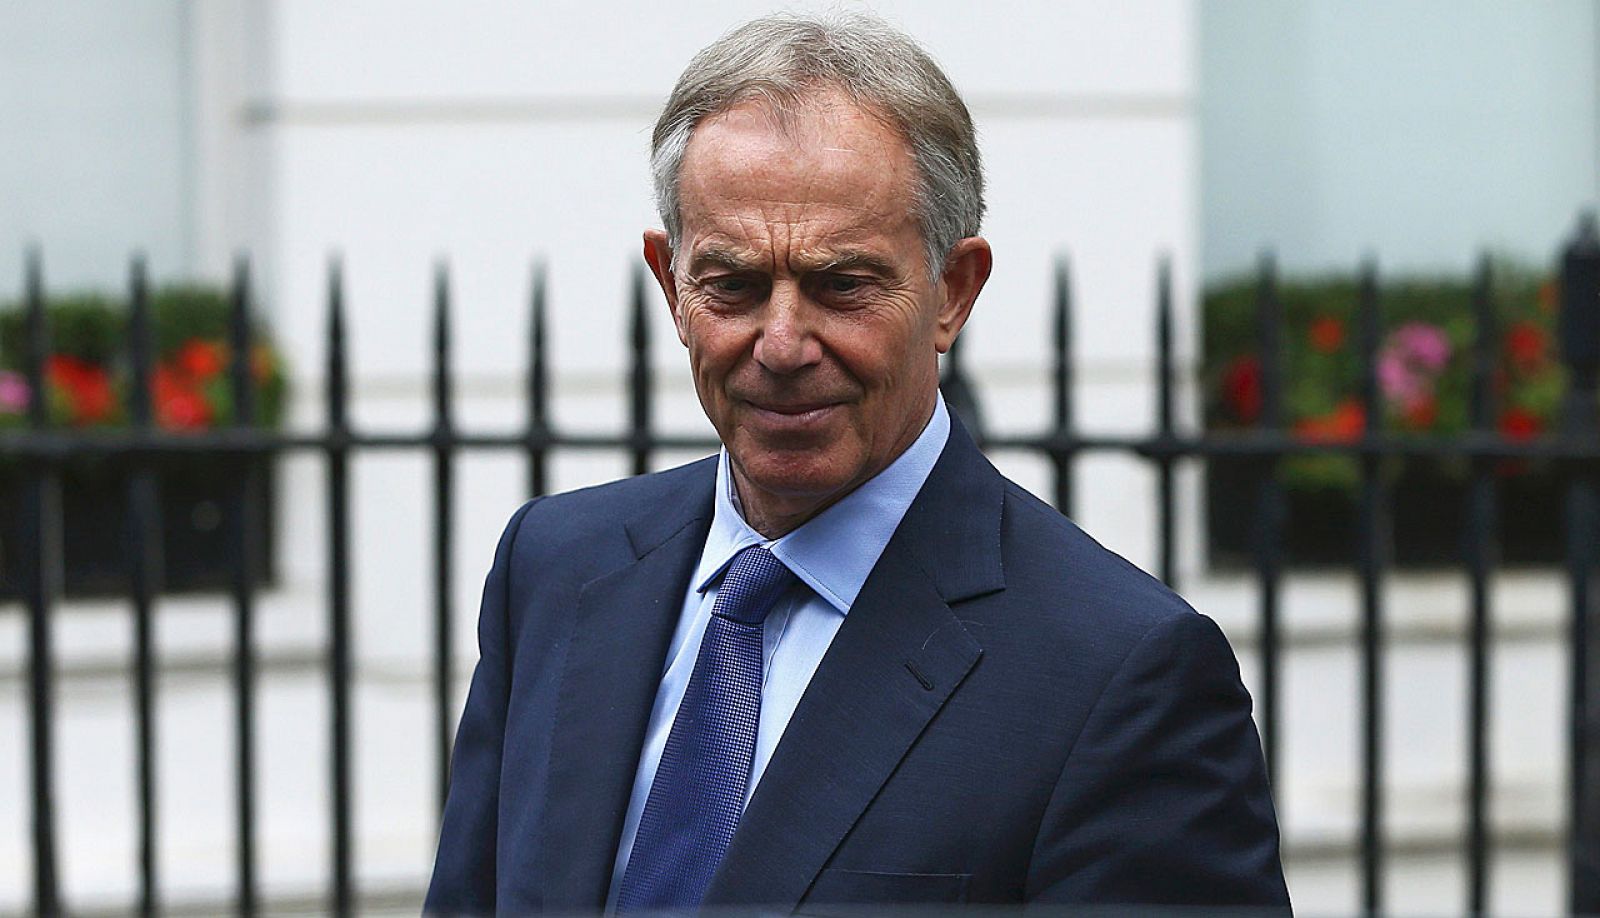 El ex primer ministro británico Tony Blair ha afirmado que tomó la decisión de invadir Irak  de "buena fe" y para el "mejor interés" de su país.